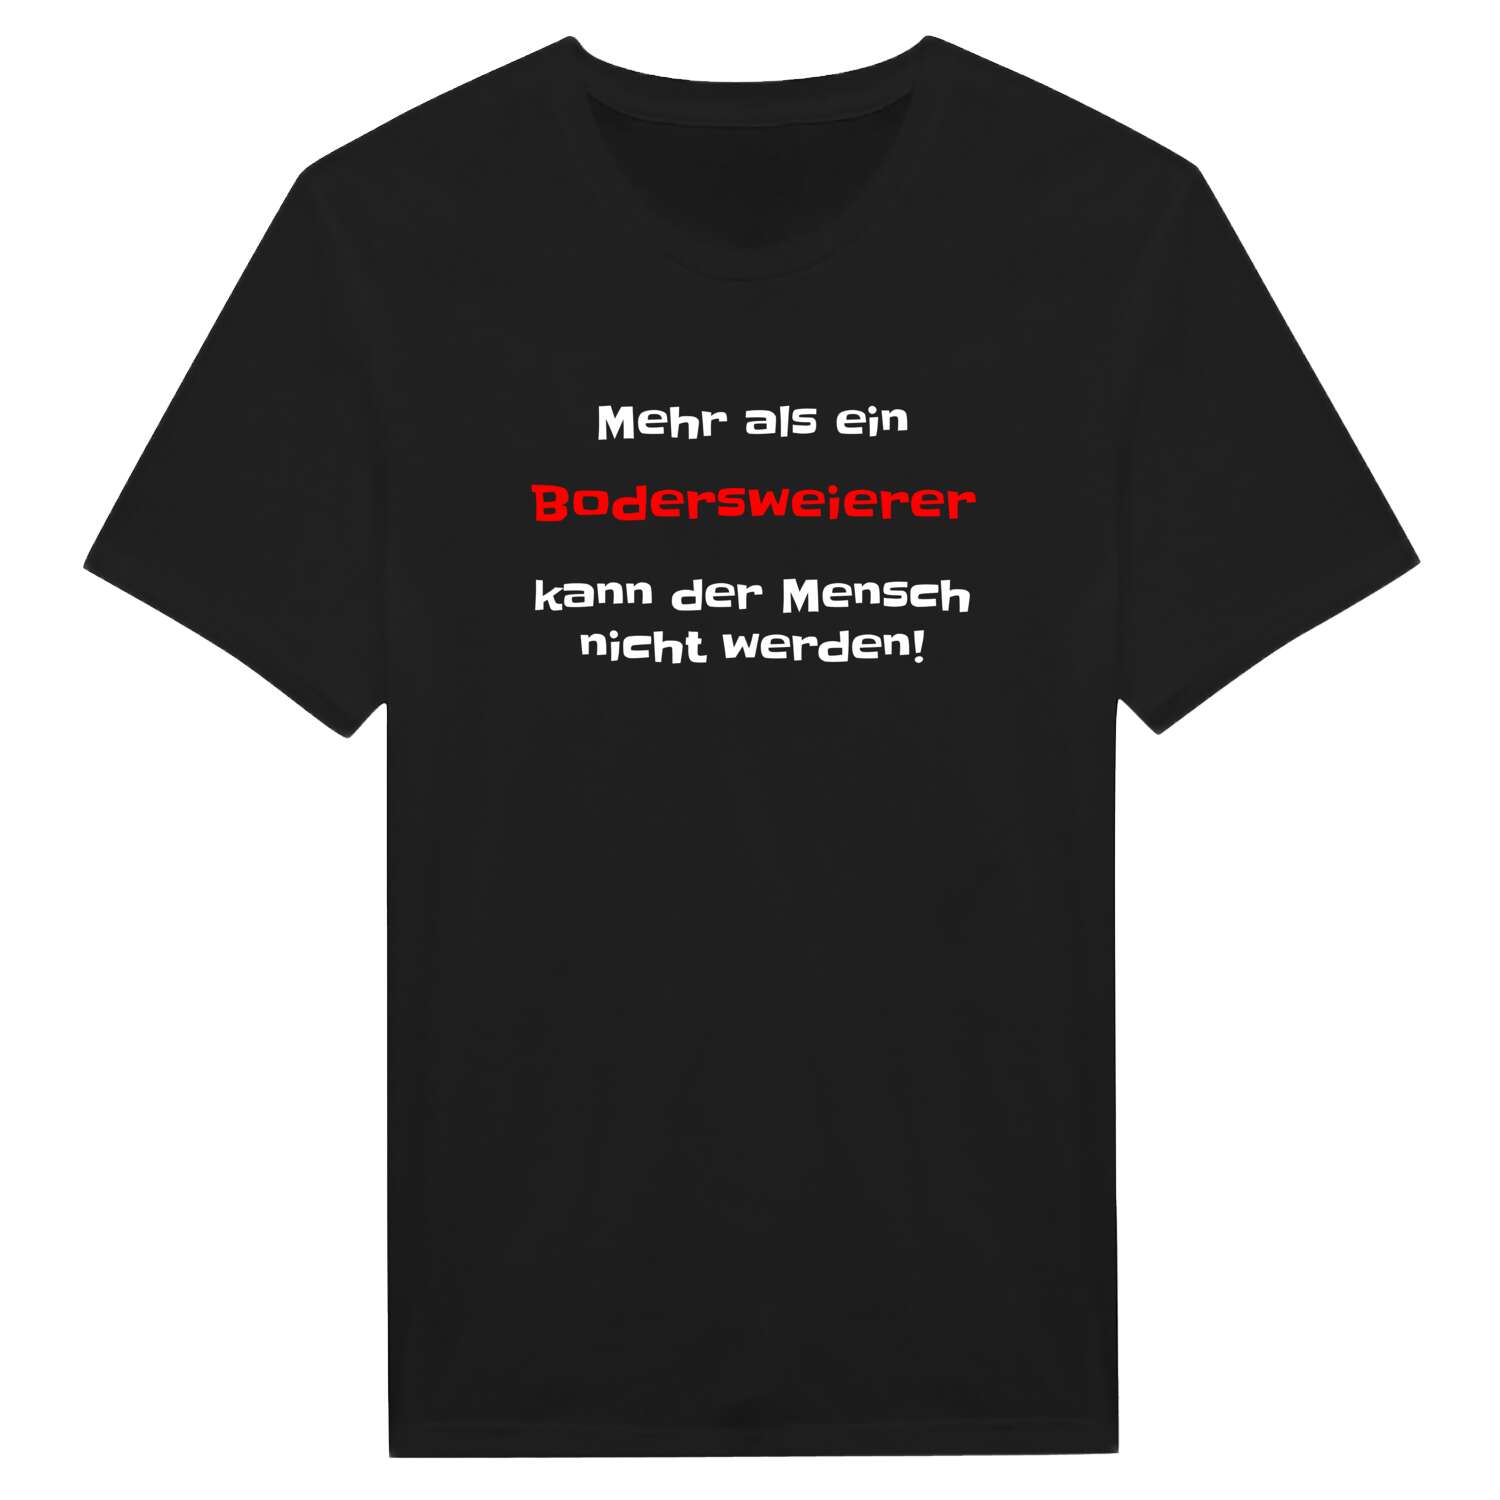 Bodersweier T-Shirt »Mehr als ein«